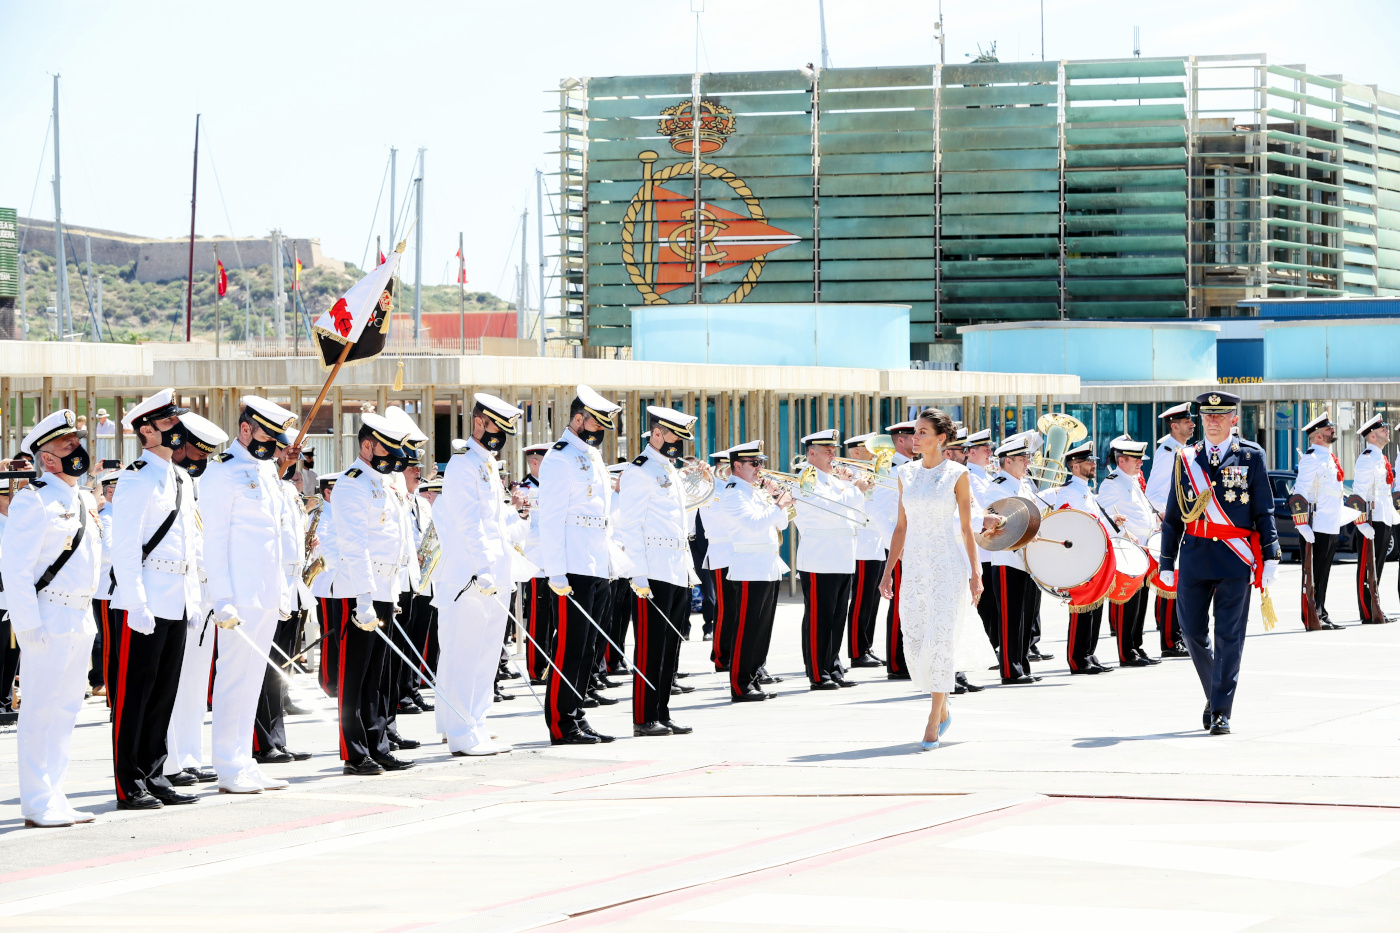  
Reina Letizia:”Los españoles apreciamos, apoyamos, respetamos y admiramos a nuestras Fuerzas Armadas”